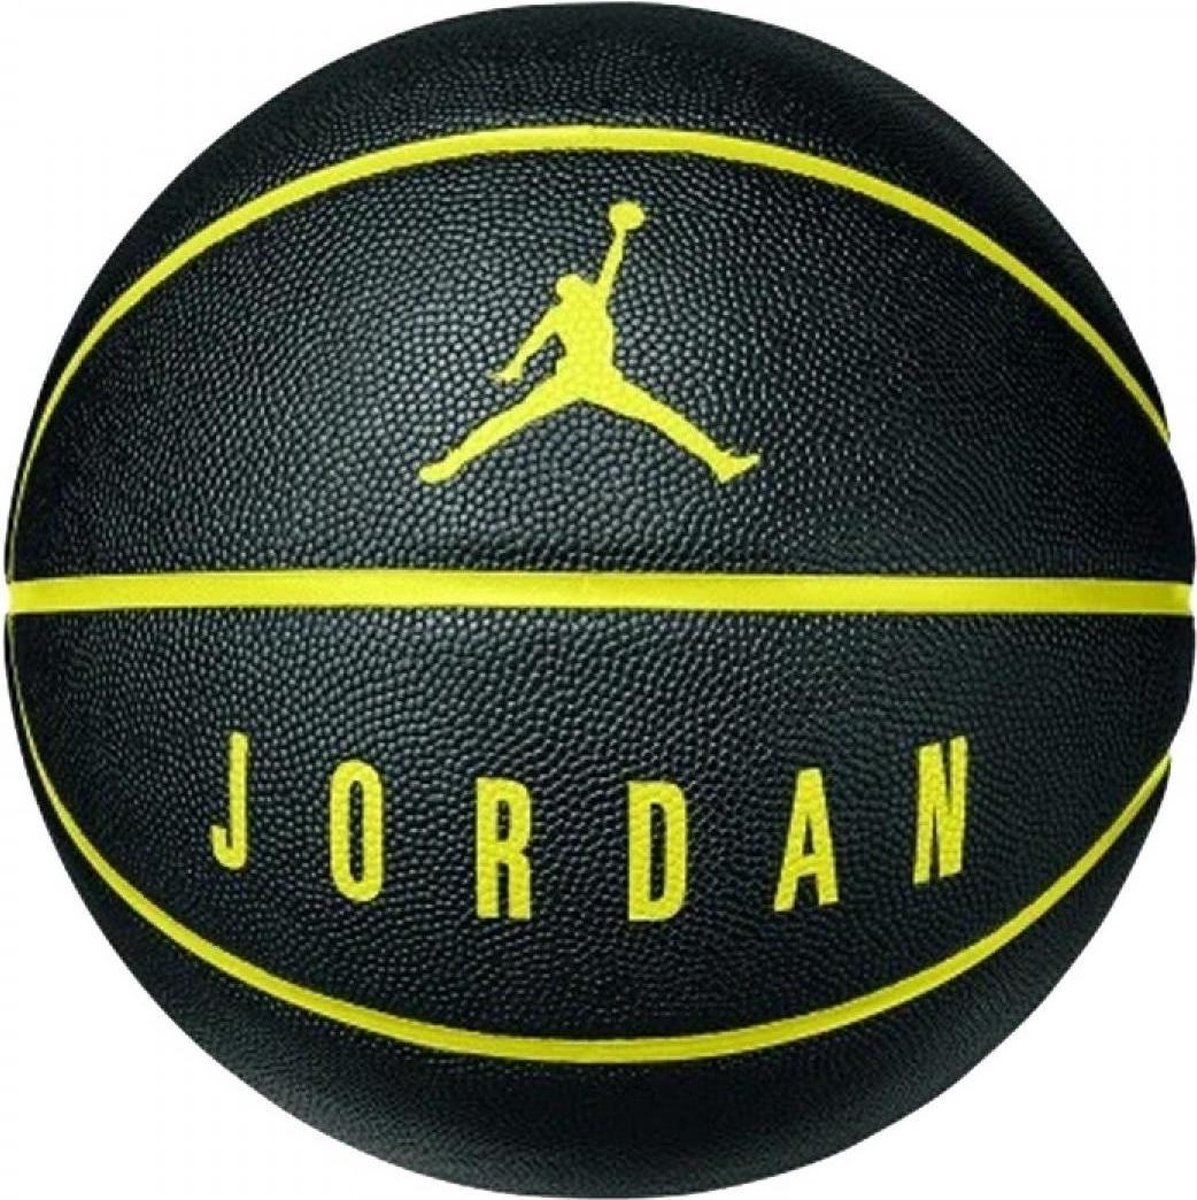 Graag gedaan Secretaris zingen Nike BasketbalKinderen en volwassenen - zwart/geel | bol.com